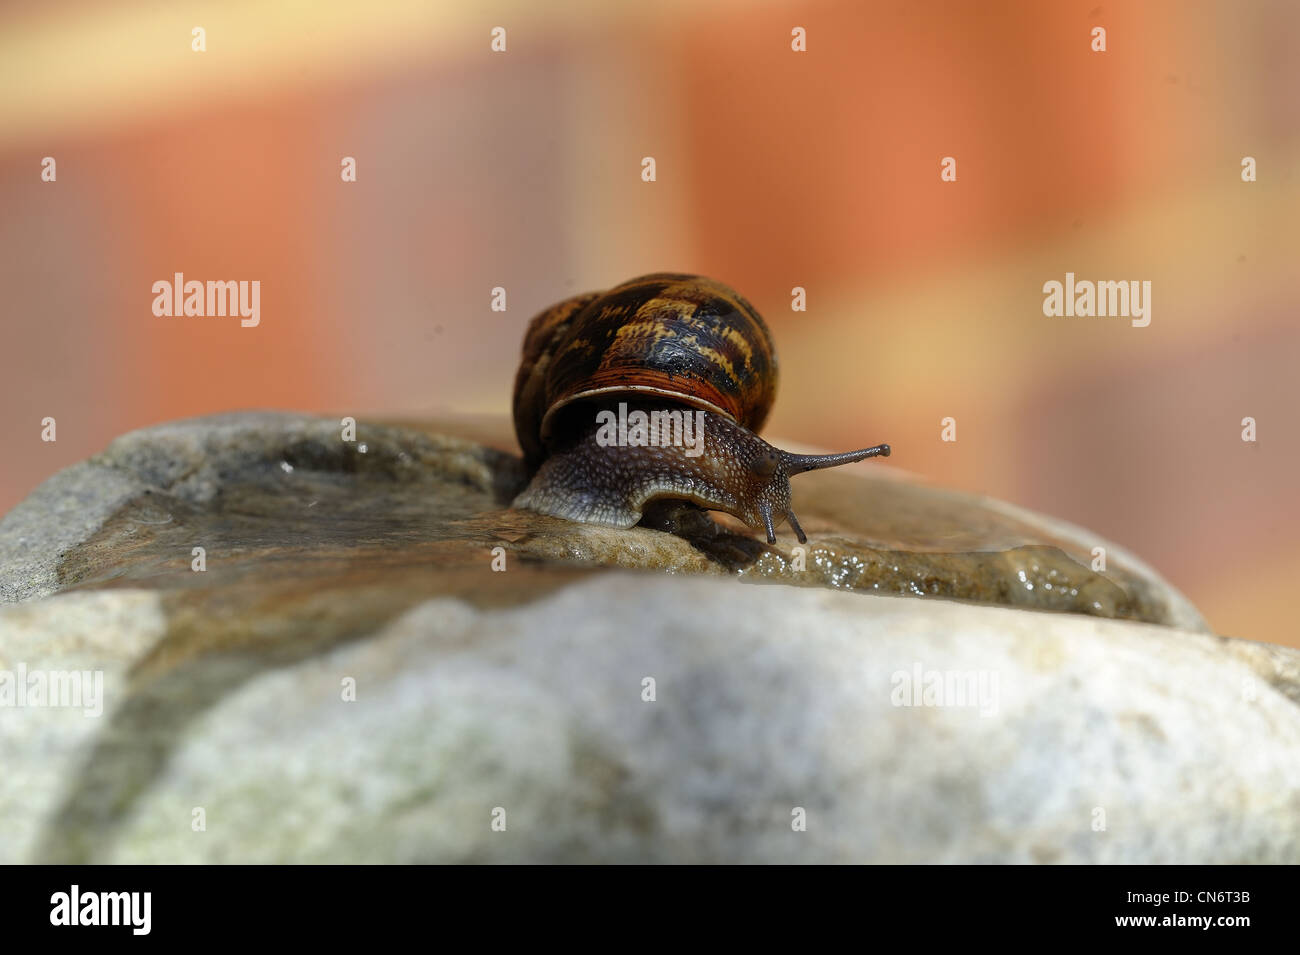 Garden snail Stock Photo